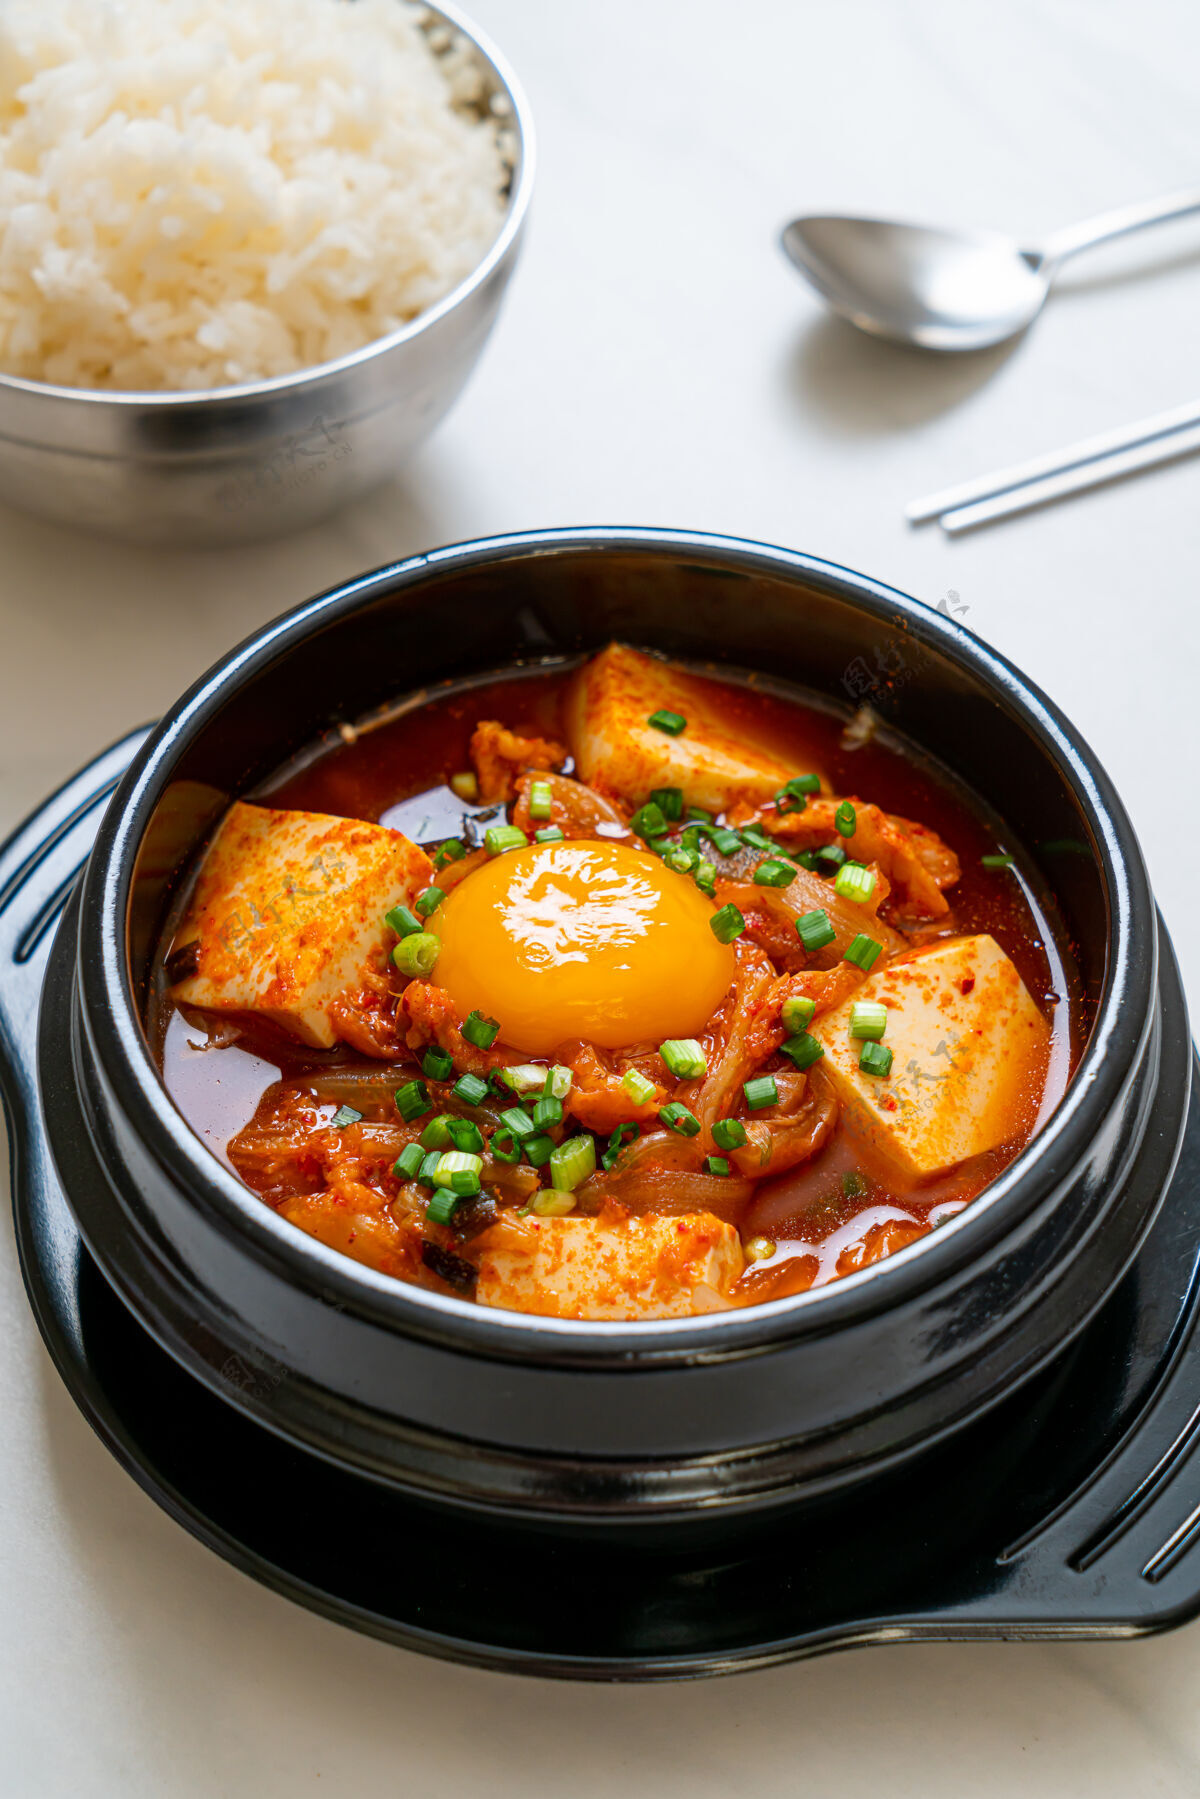 餐厅“泡菜jjigae”或泡菜豆腐蛋汤或韩国泡菜炖肉-韩国传统风格的食物韩式食物亚洲筷子